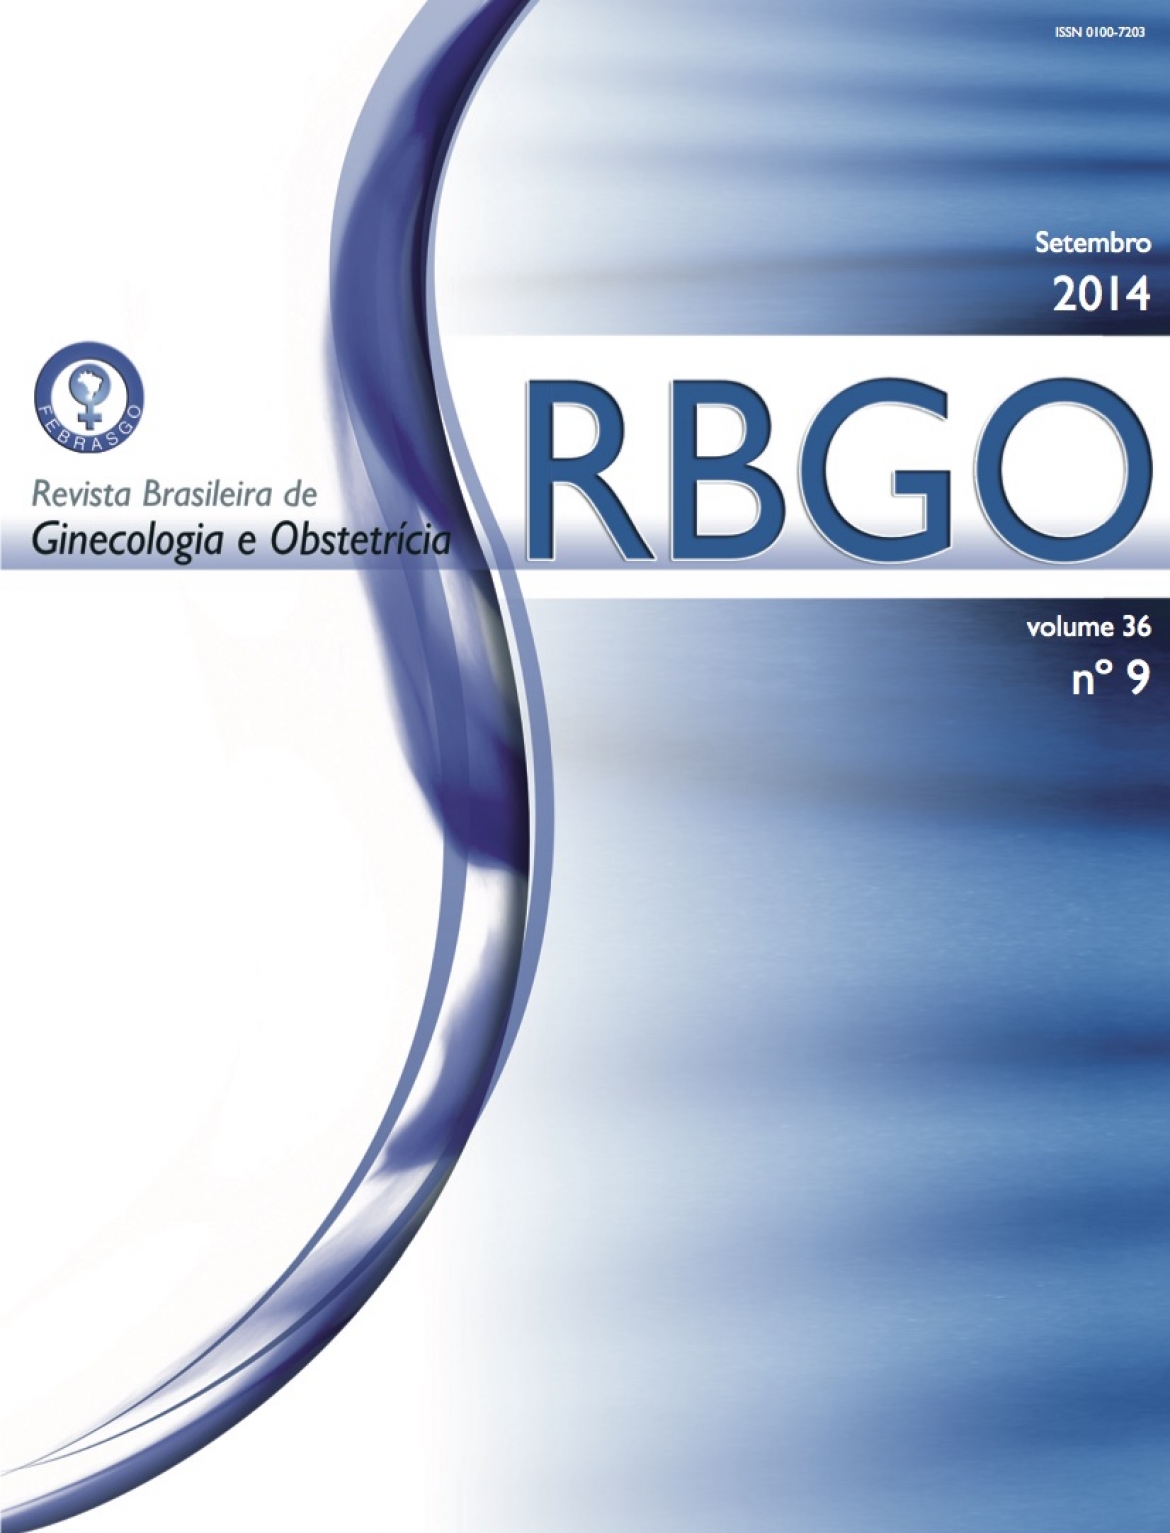 Revista Brasileira de Ginecologia e Obstetrícia – 2014 / Vol. 36 n°9